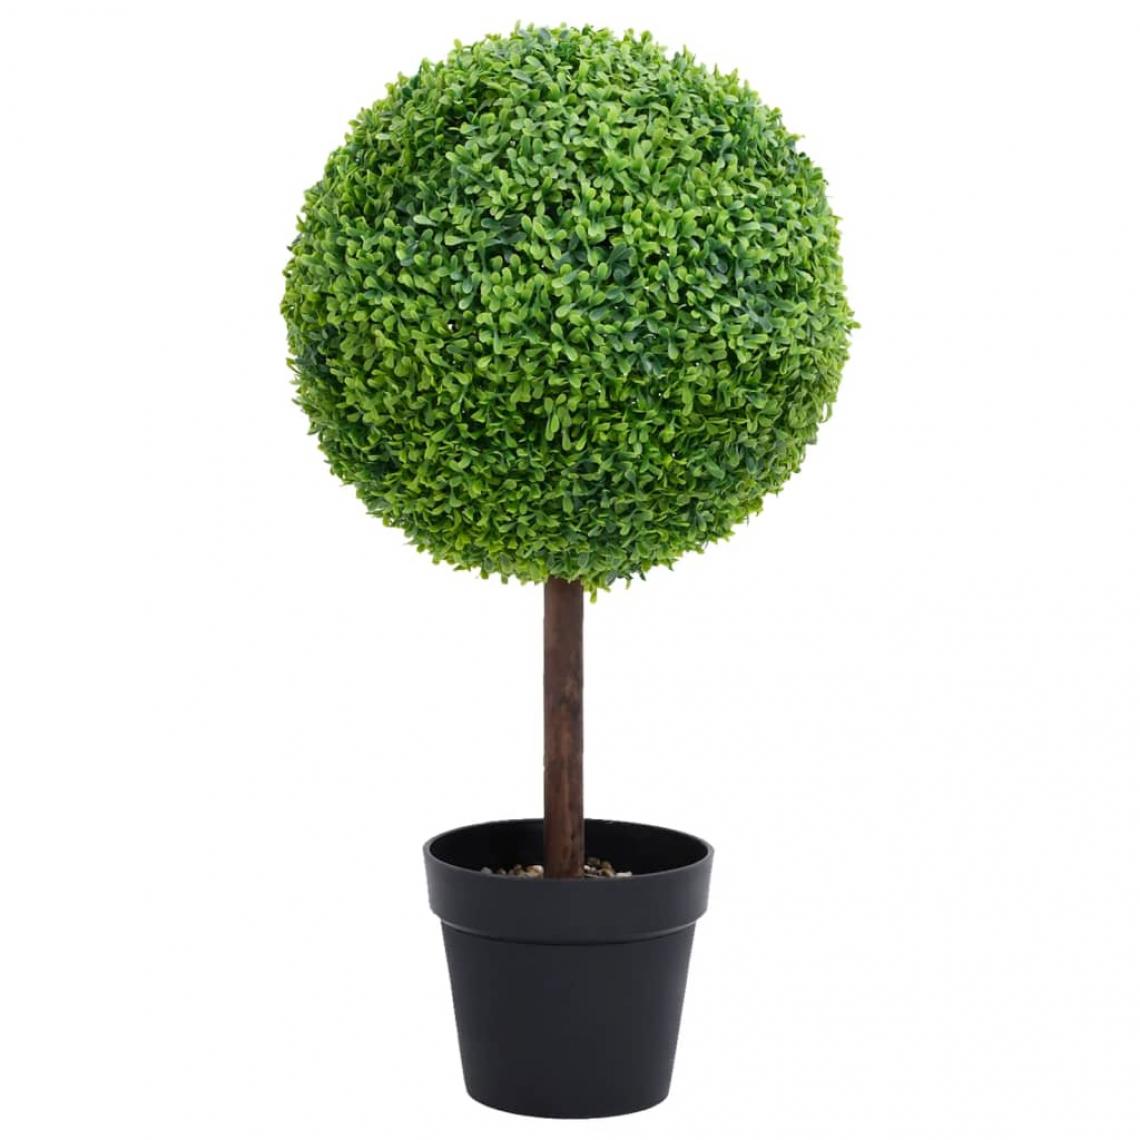 Vidaxl - vidaXL Plante de buis artificiel avec pot Forme de boule Vert 71 cm - Plantes et fleurs artificielles